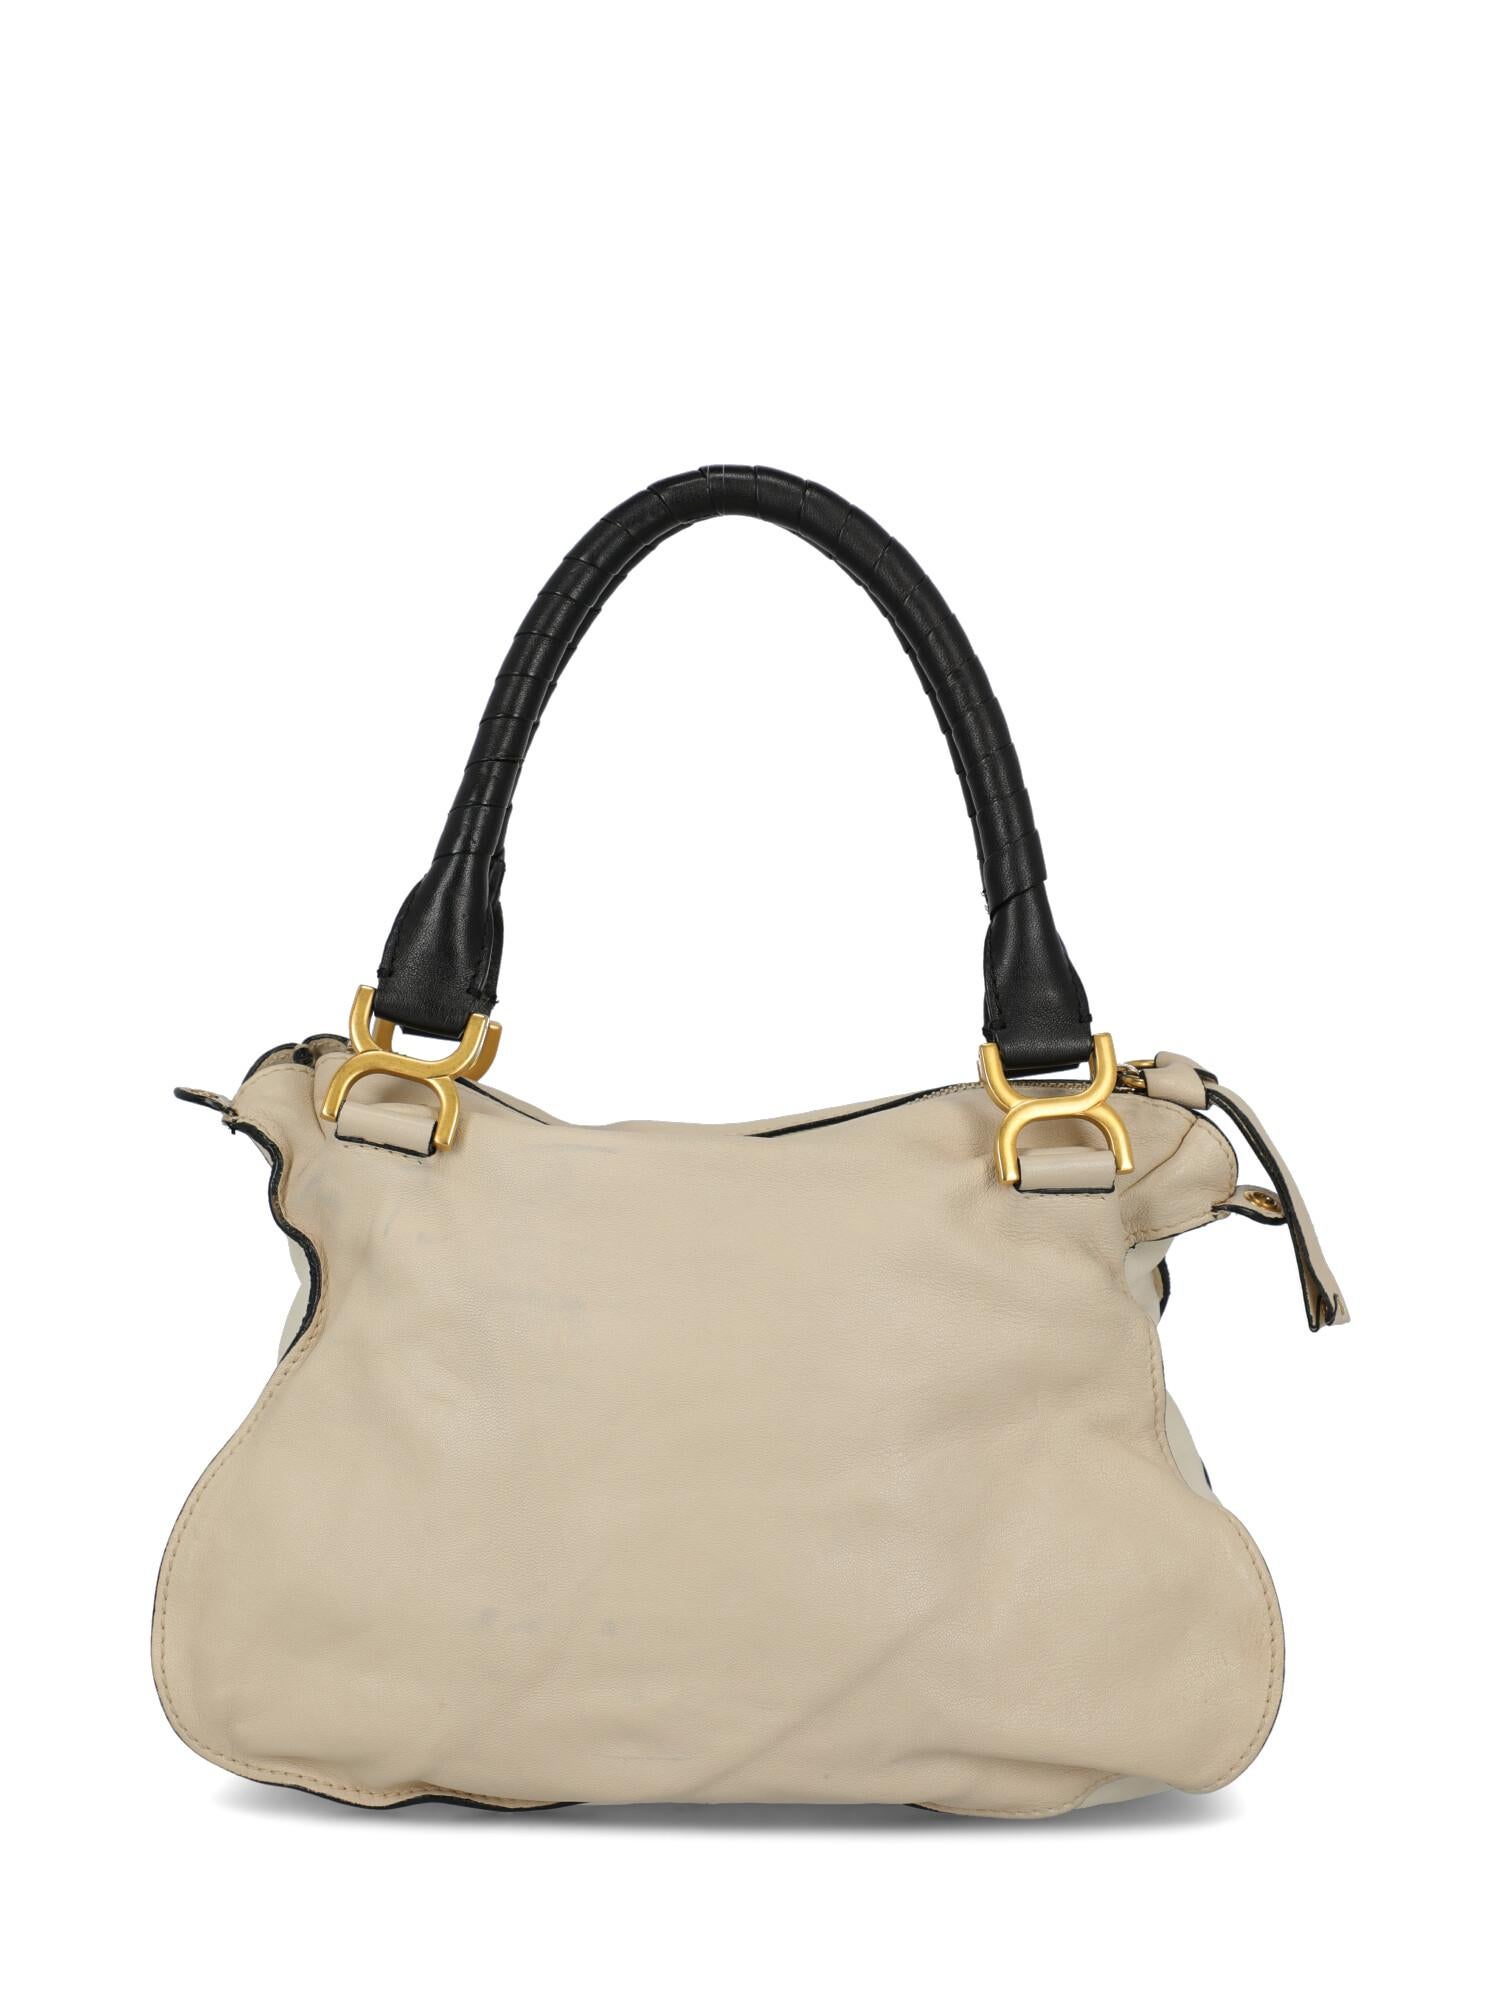 Women's Chloe Woman Handbag Beige  For Sale